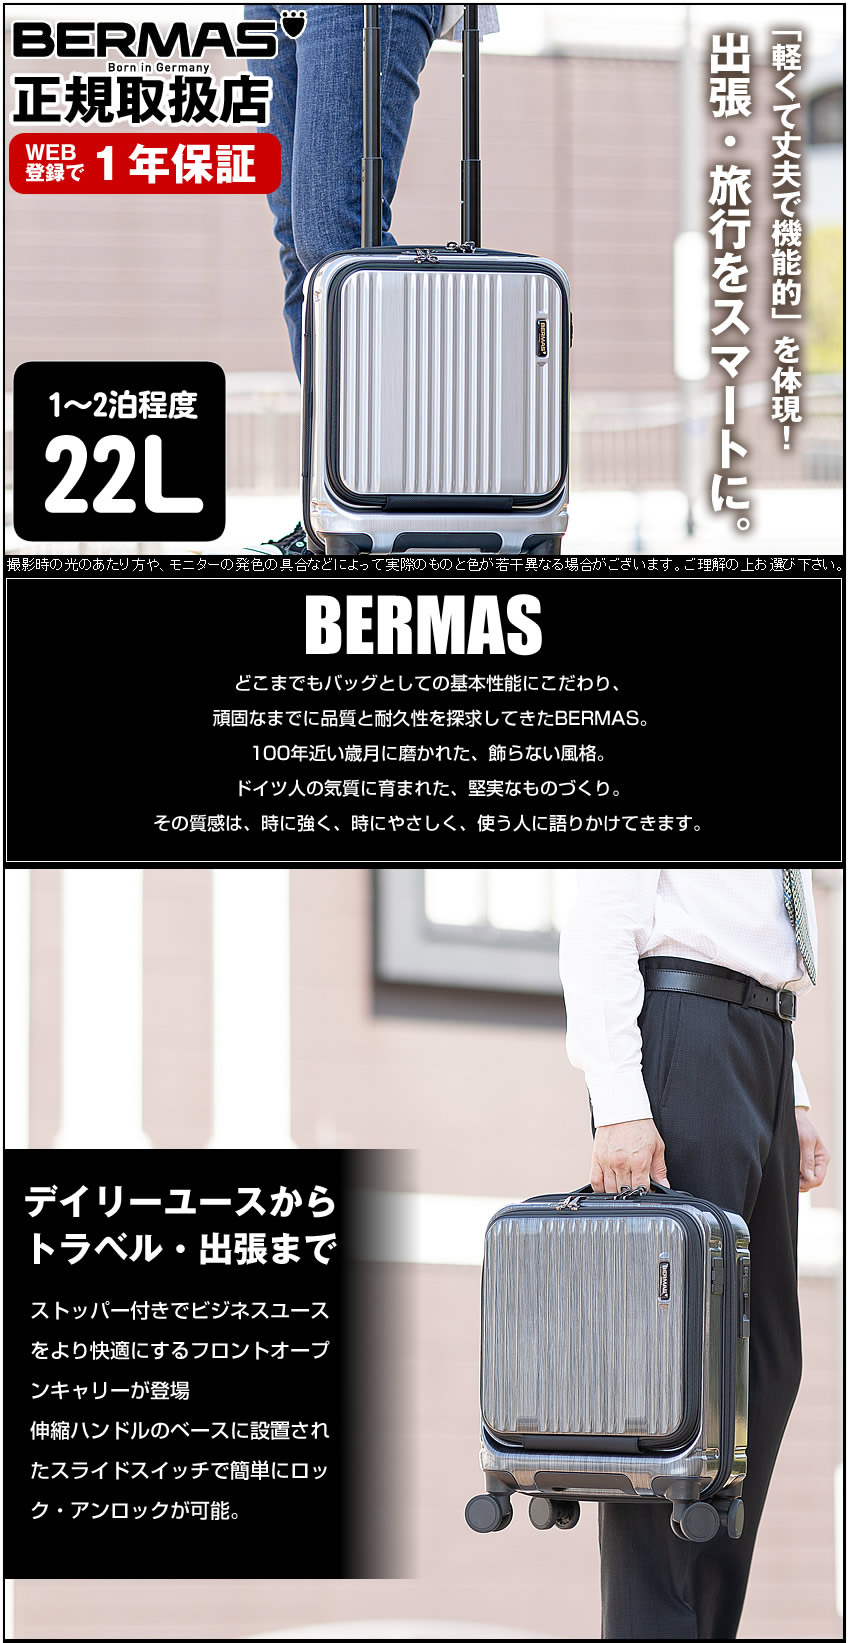 バーマス キャリーケース キャリーバッグ トロリー インターシティ BERMAS スーツケース 22L 軽量 フレームタイプ Sサイズ 機内持込サイズ  1-2泊 60504 60524(仕様変更) BS バッグ